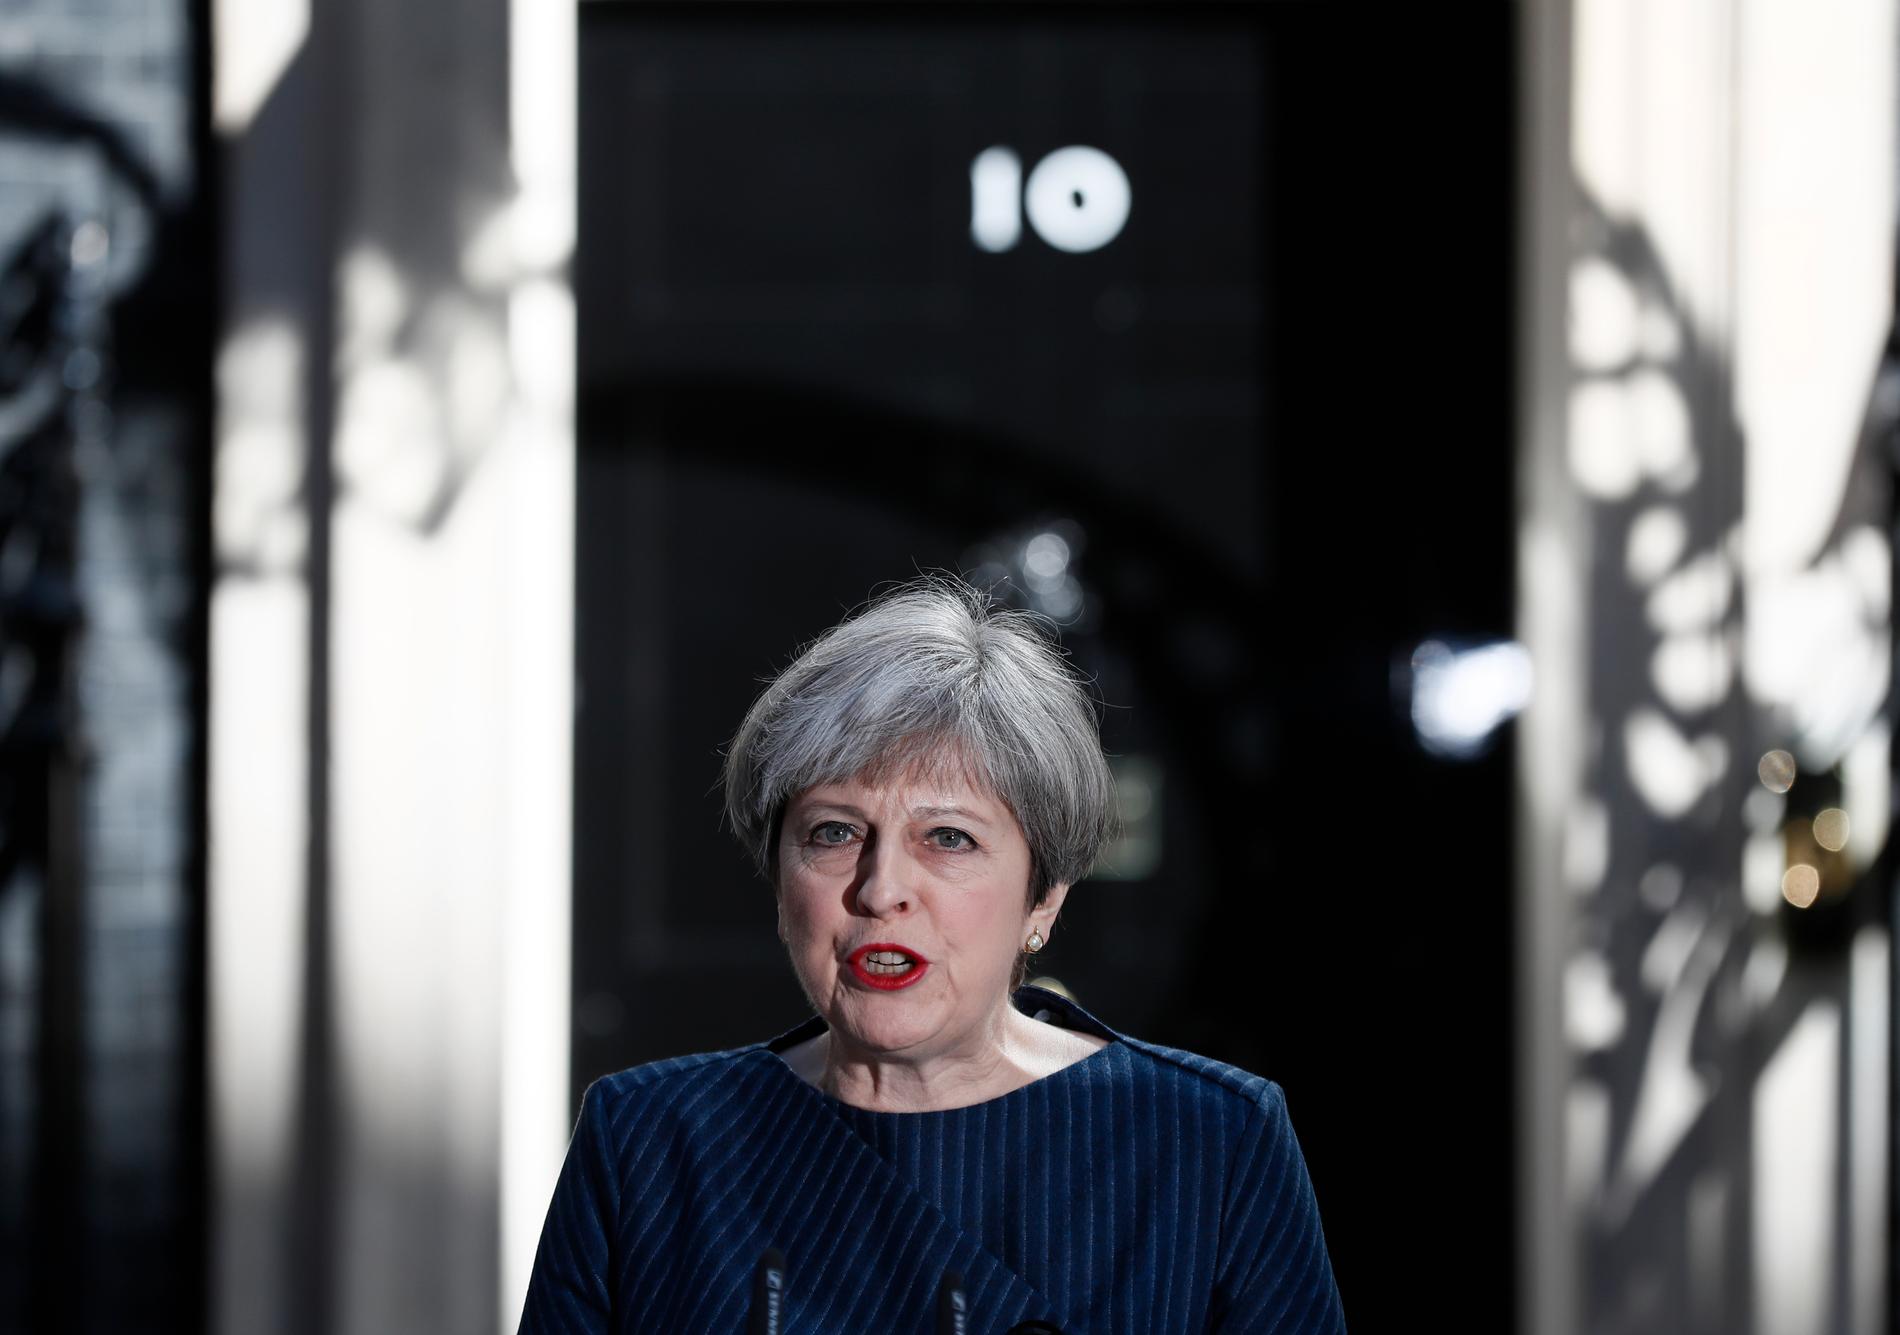  STATSMINISTER: Theresa May overtok som statsminister etter David Cameron i juli i fjor. 